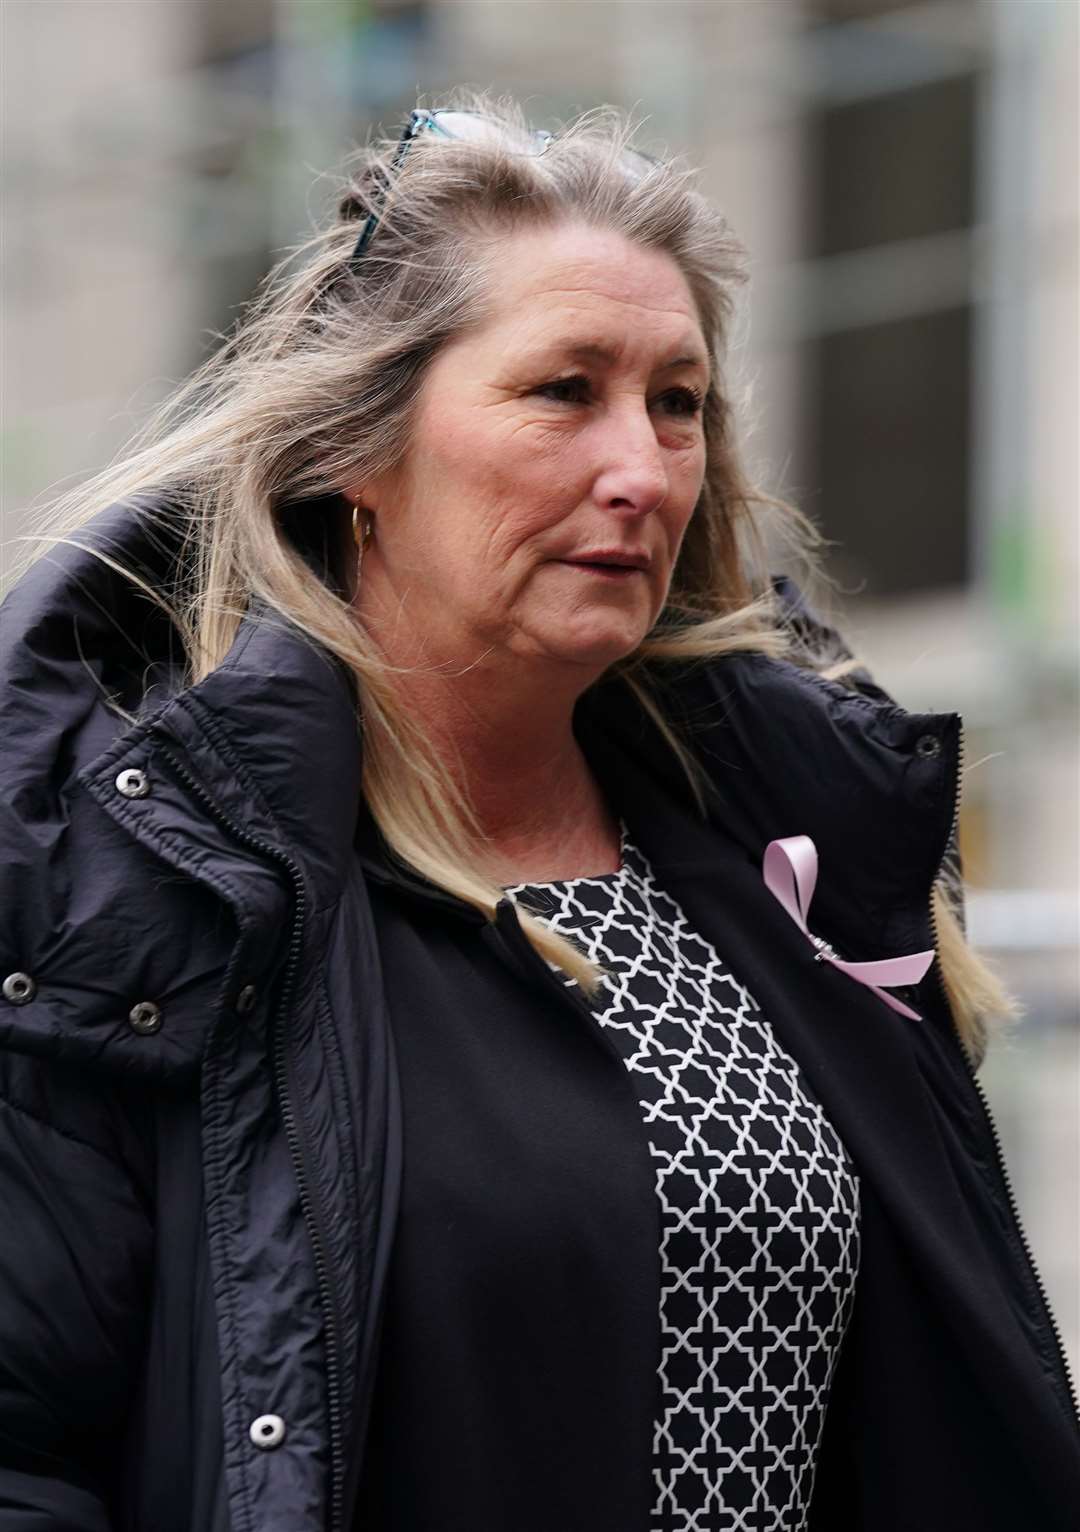 Cheryl Korbel, mother of nine-year-old Olivia Pratt-Korbel, arrives at Manchester Crown Court (Peter Byrne/PA)